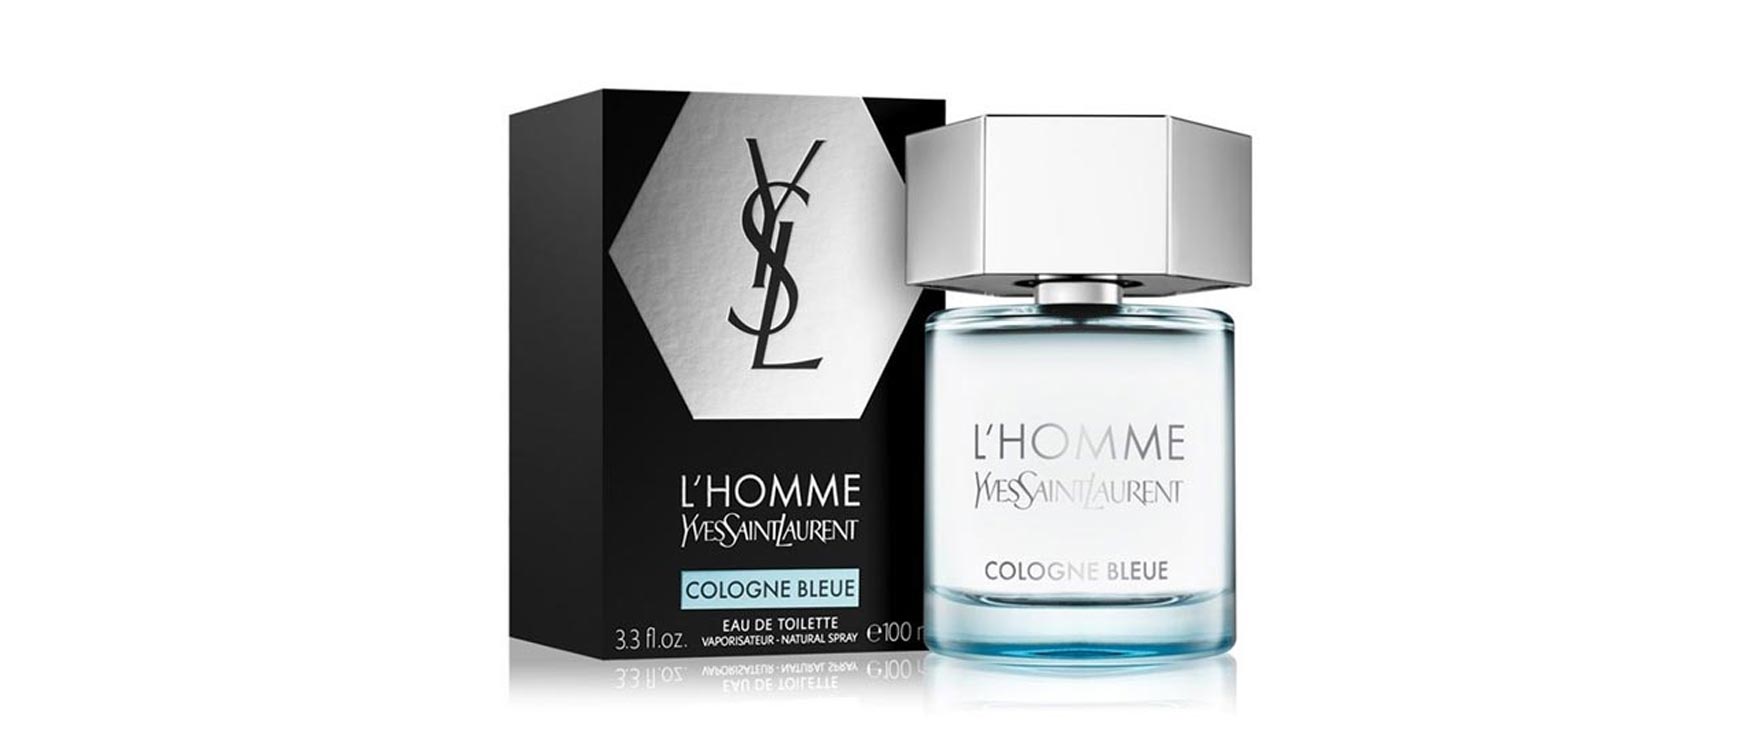 5. Yves Saint Laurent L’Homme Cologne Bleue Eau de Toilette